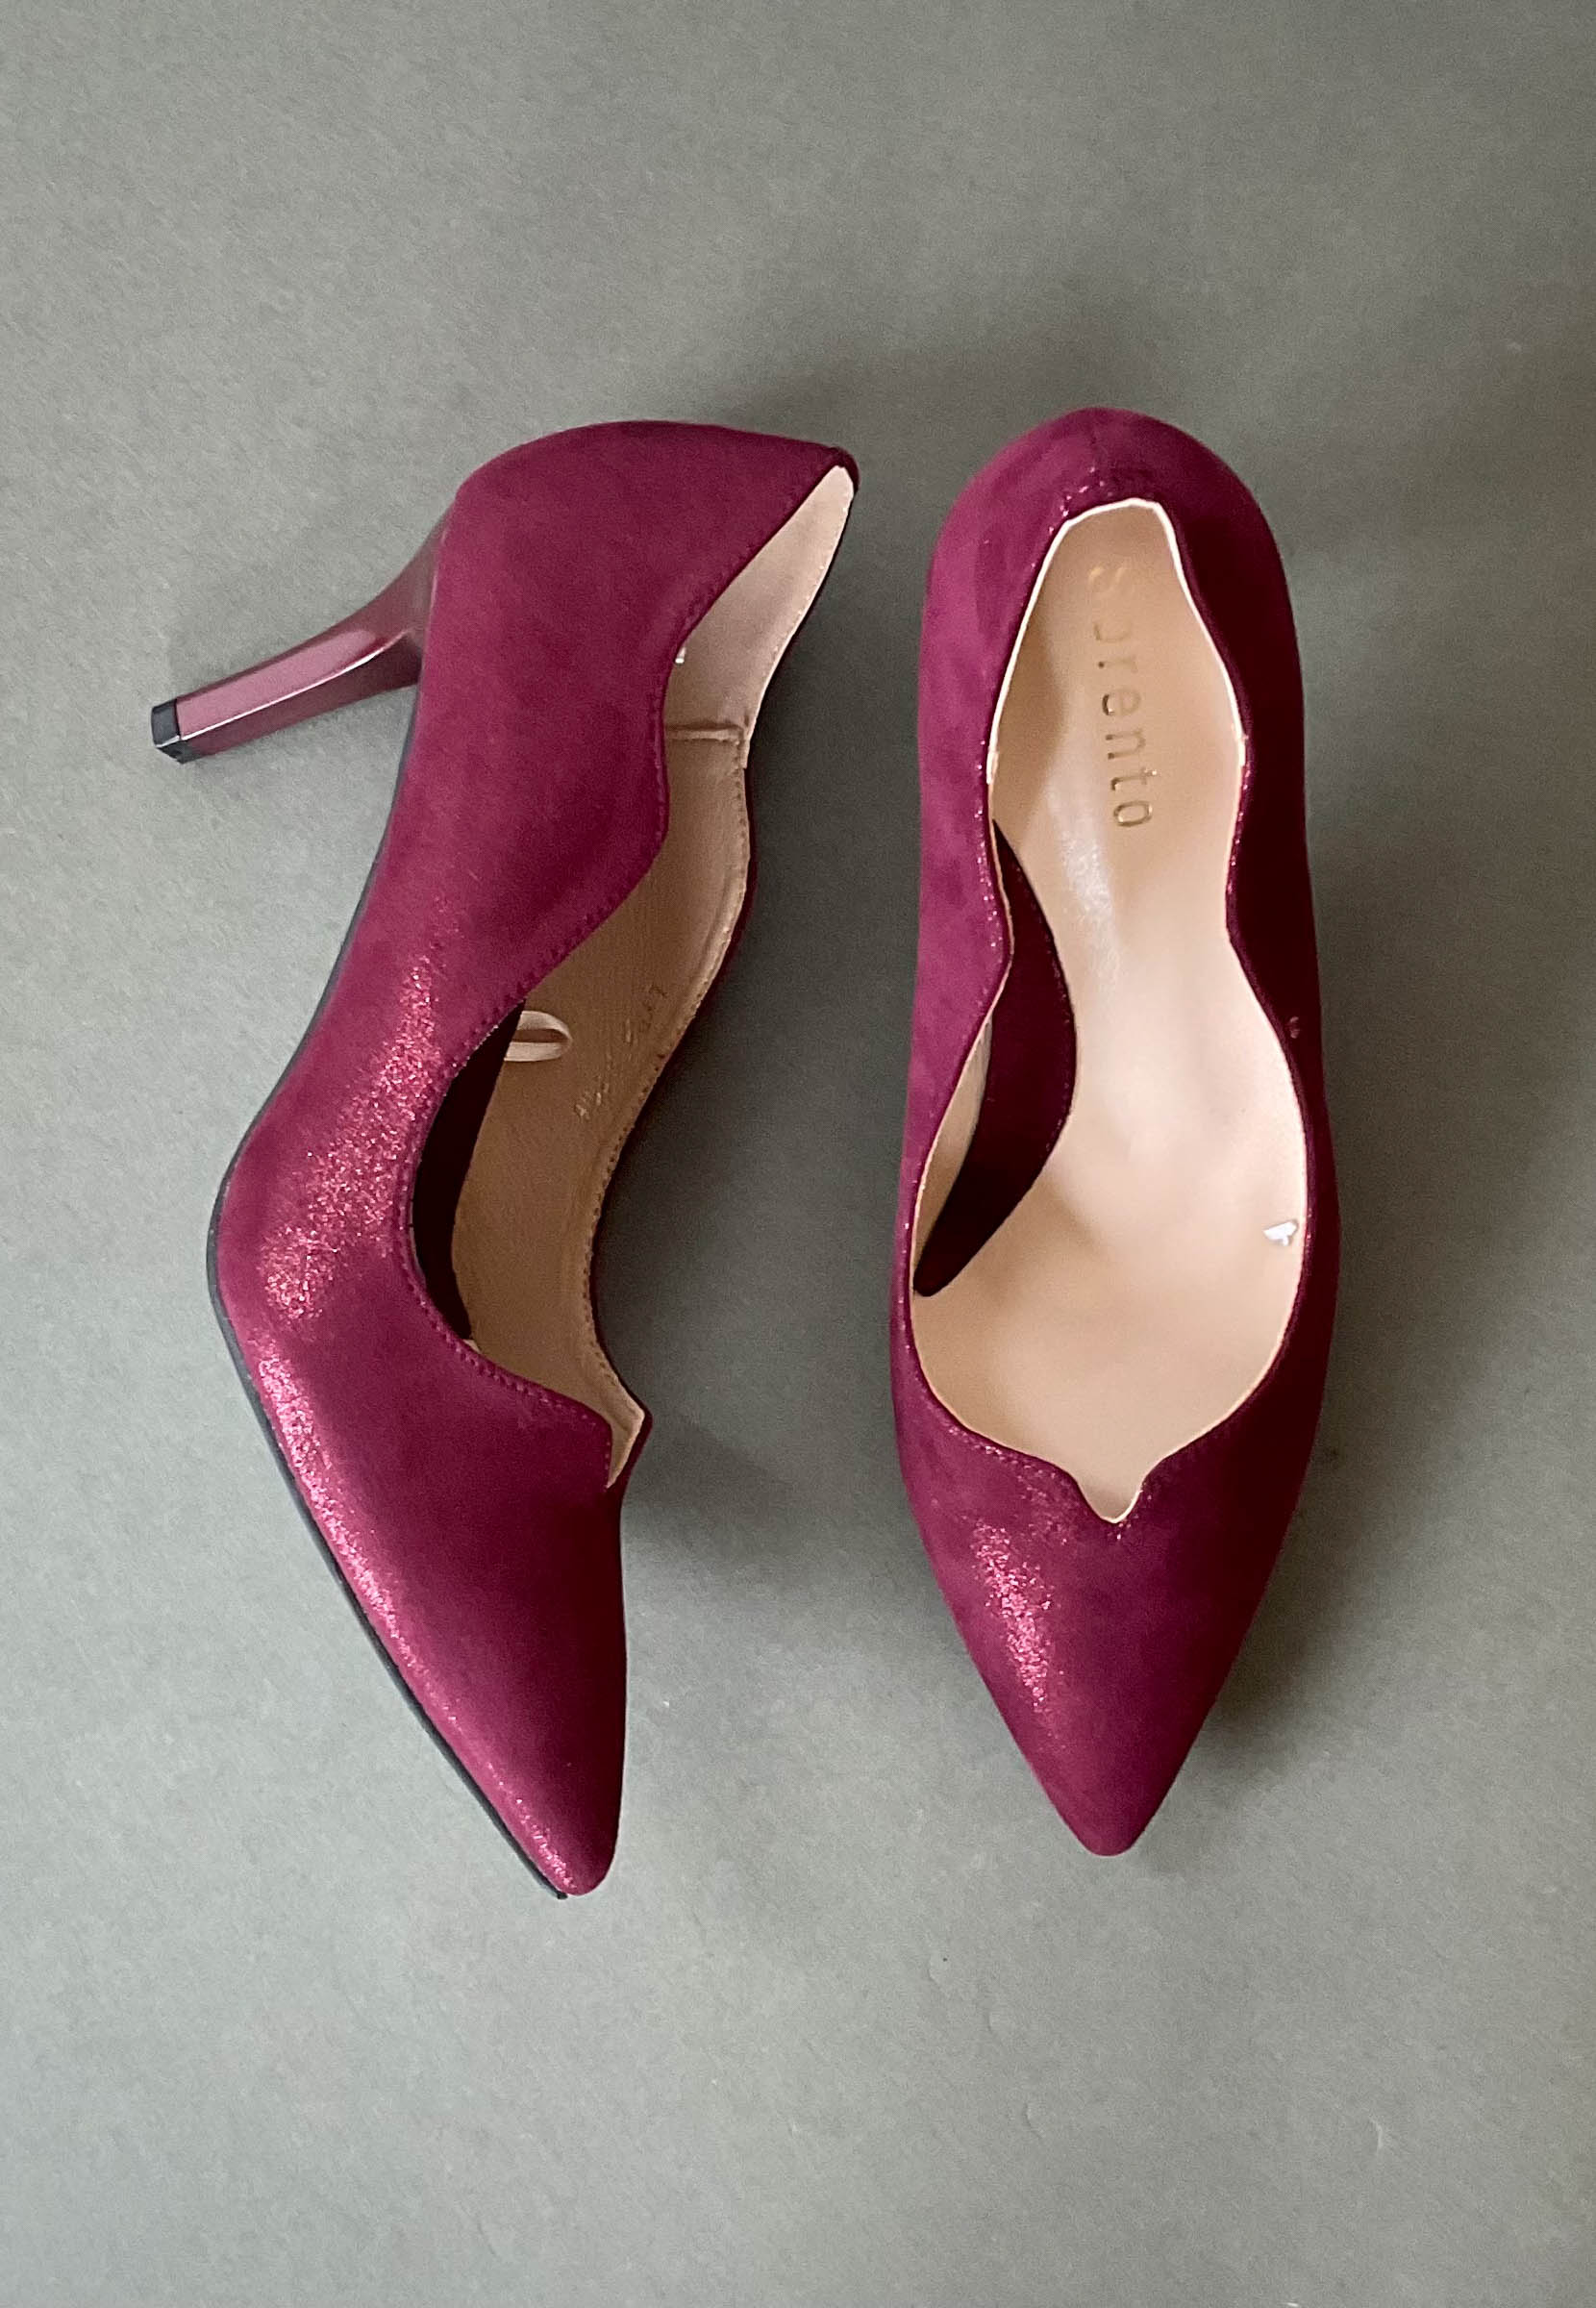 sorento wine heels